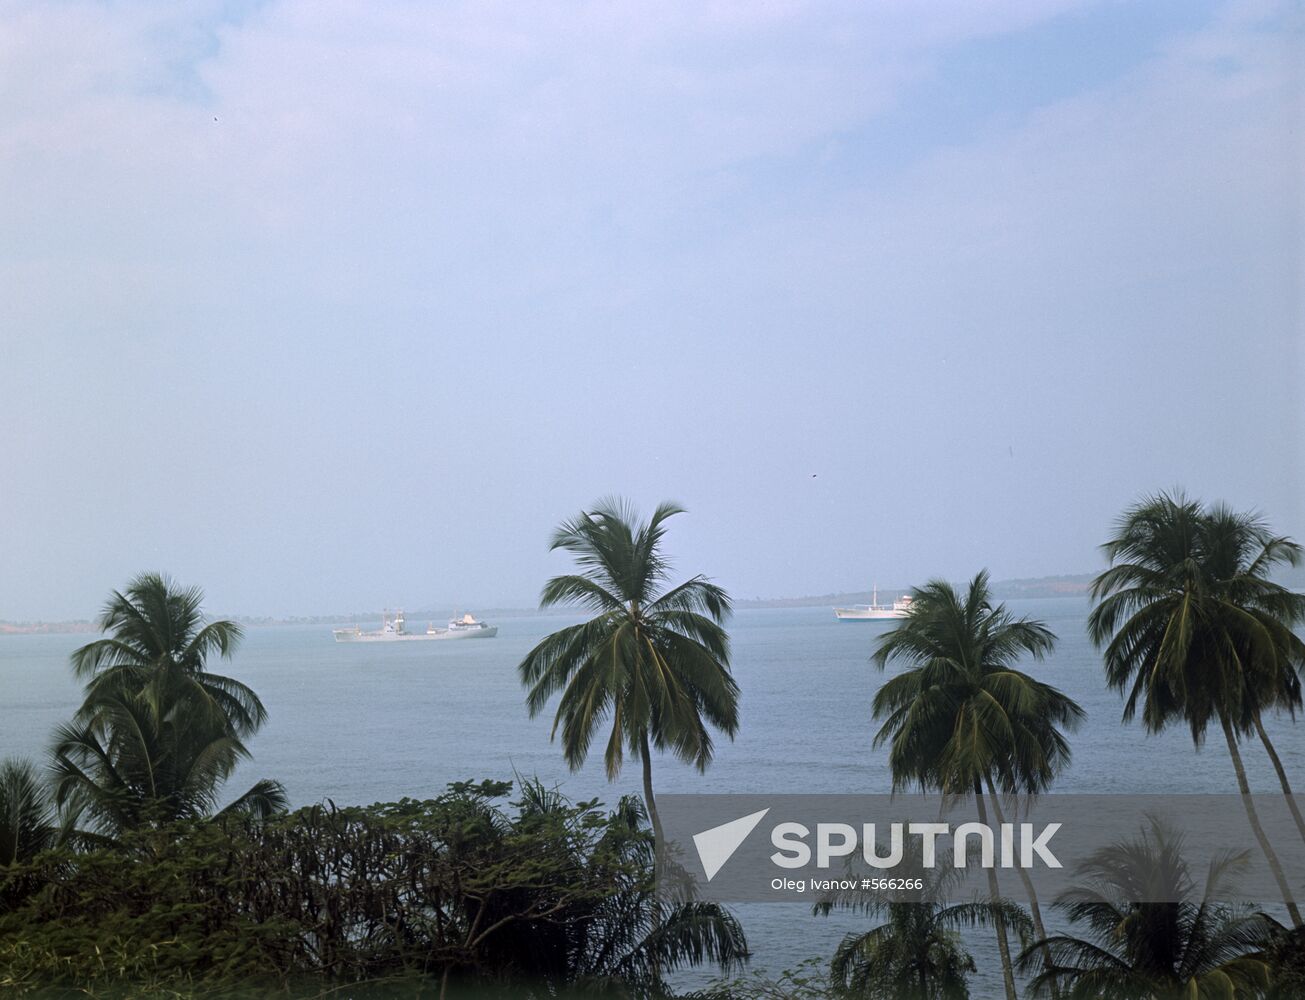 Conakry port